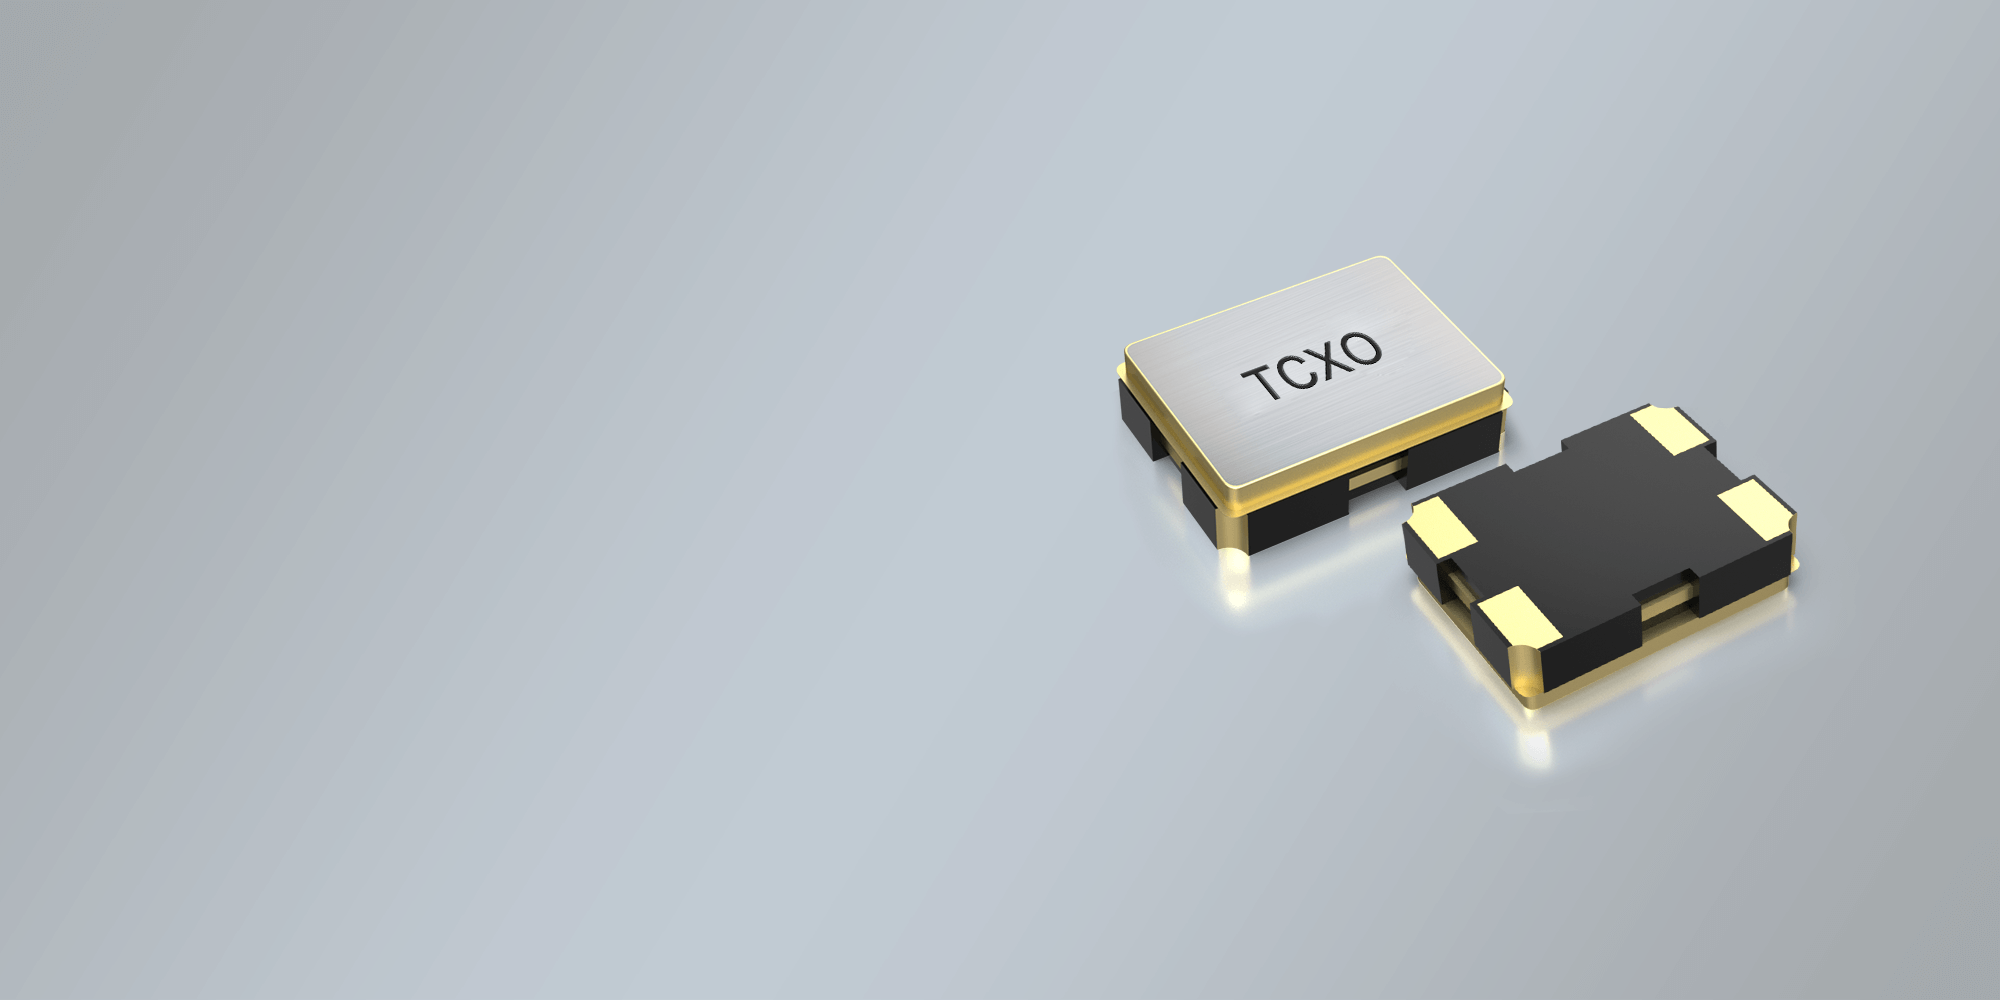 SMD TCXO OSCILLATOR 2.5 x 2.0 mm